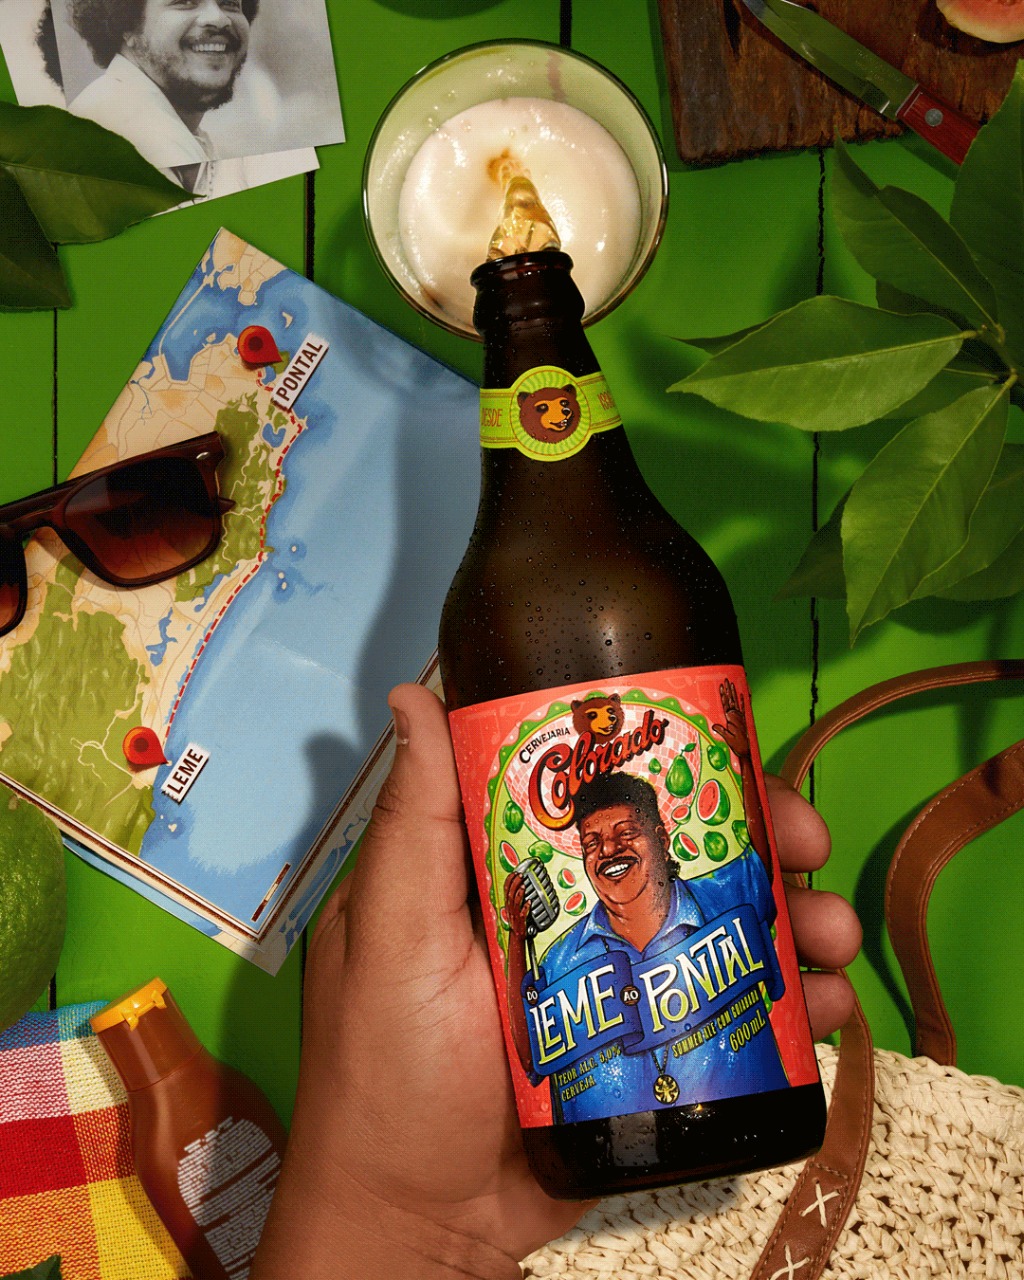 Colorado lança cerveja especial em homenagem a Tarsila do Amaral